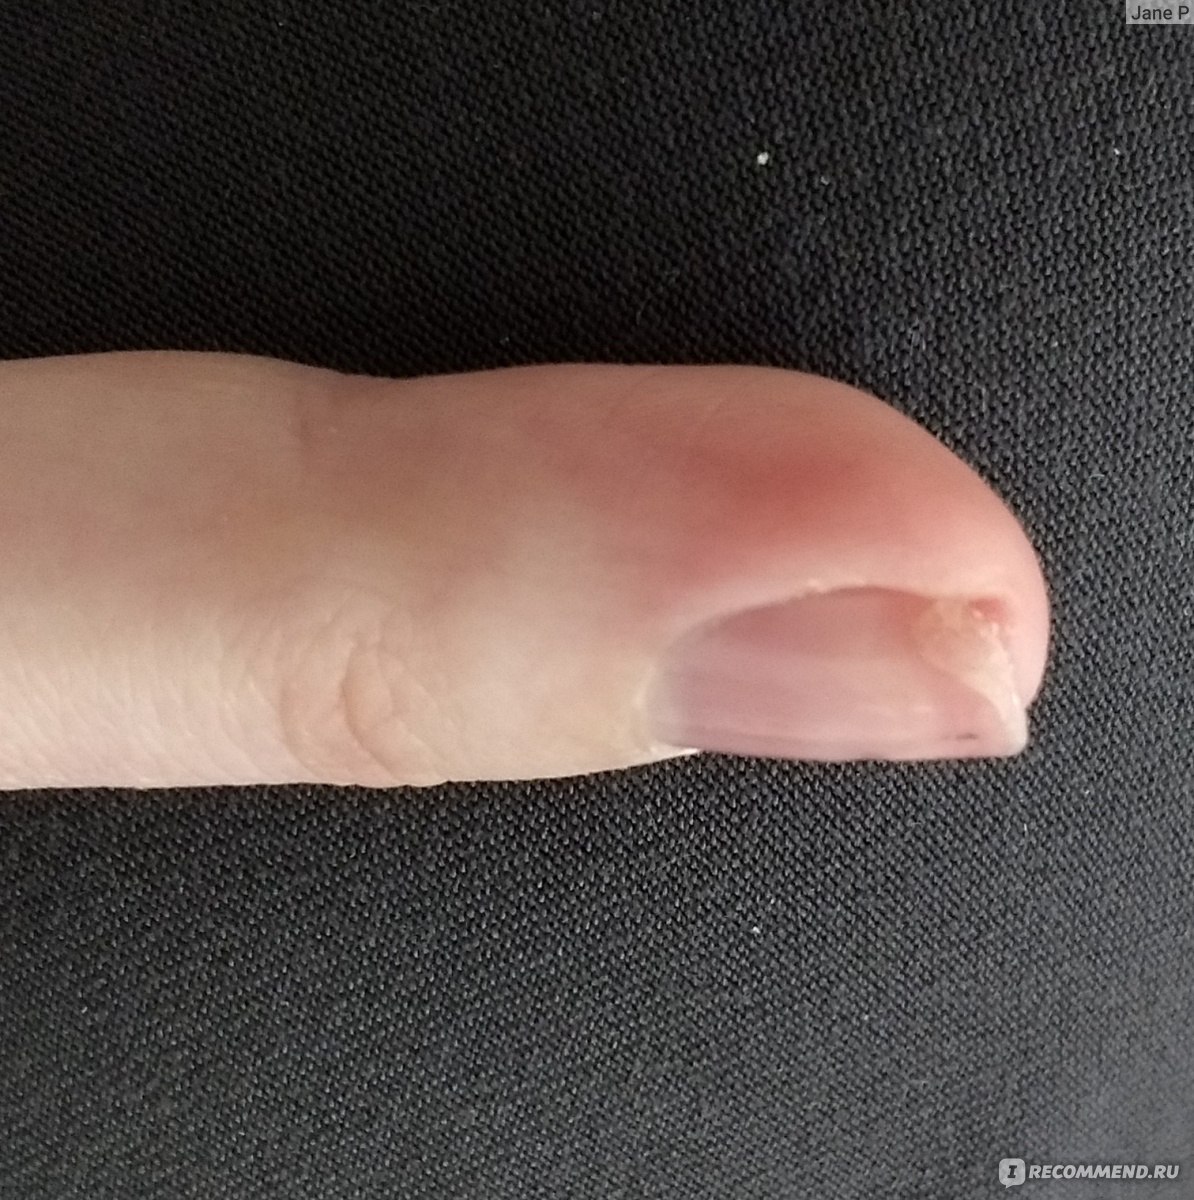 Вид сбоку, где повреждения. Средний палец